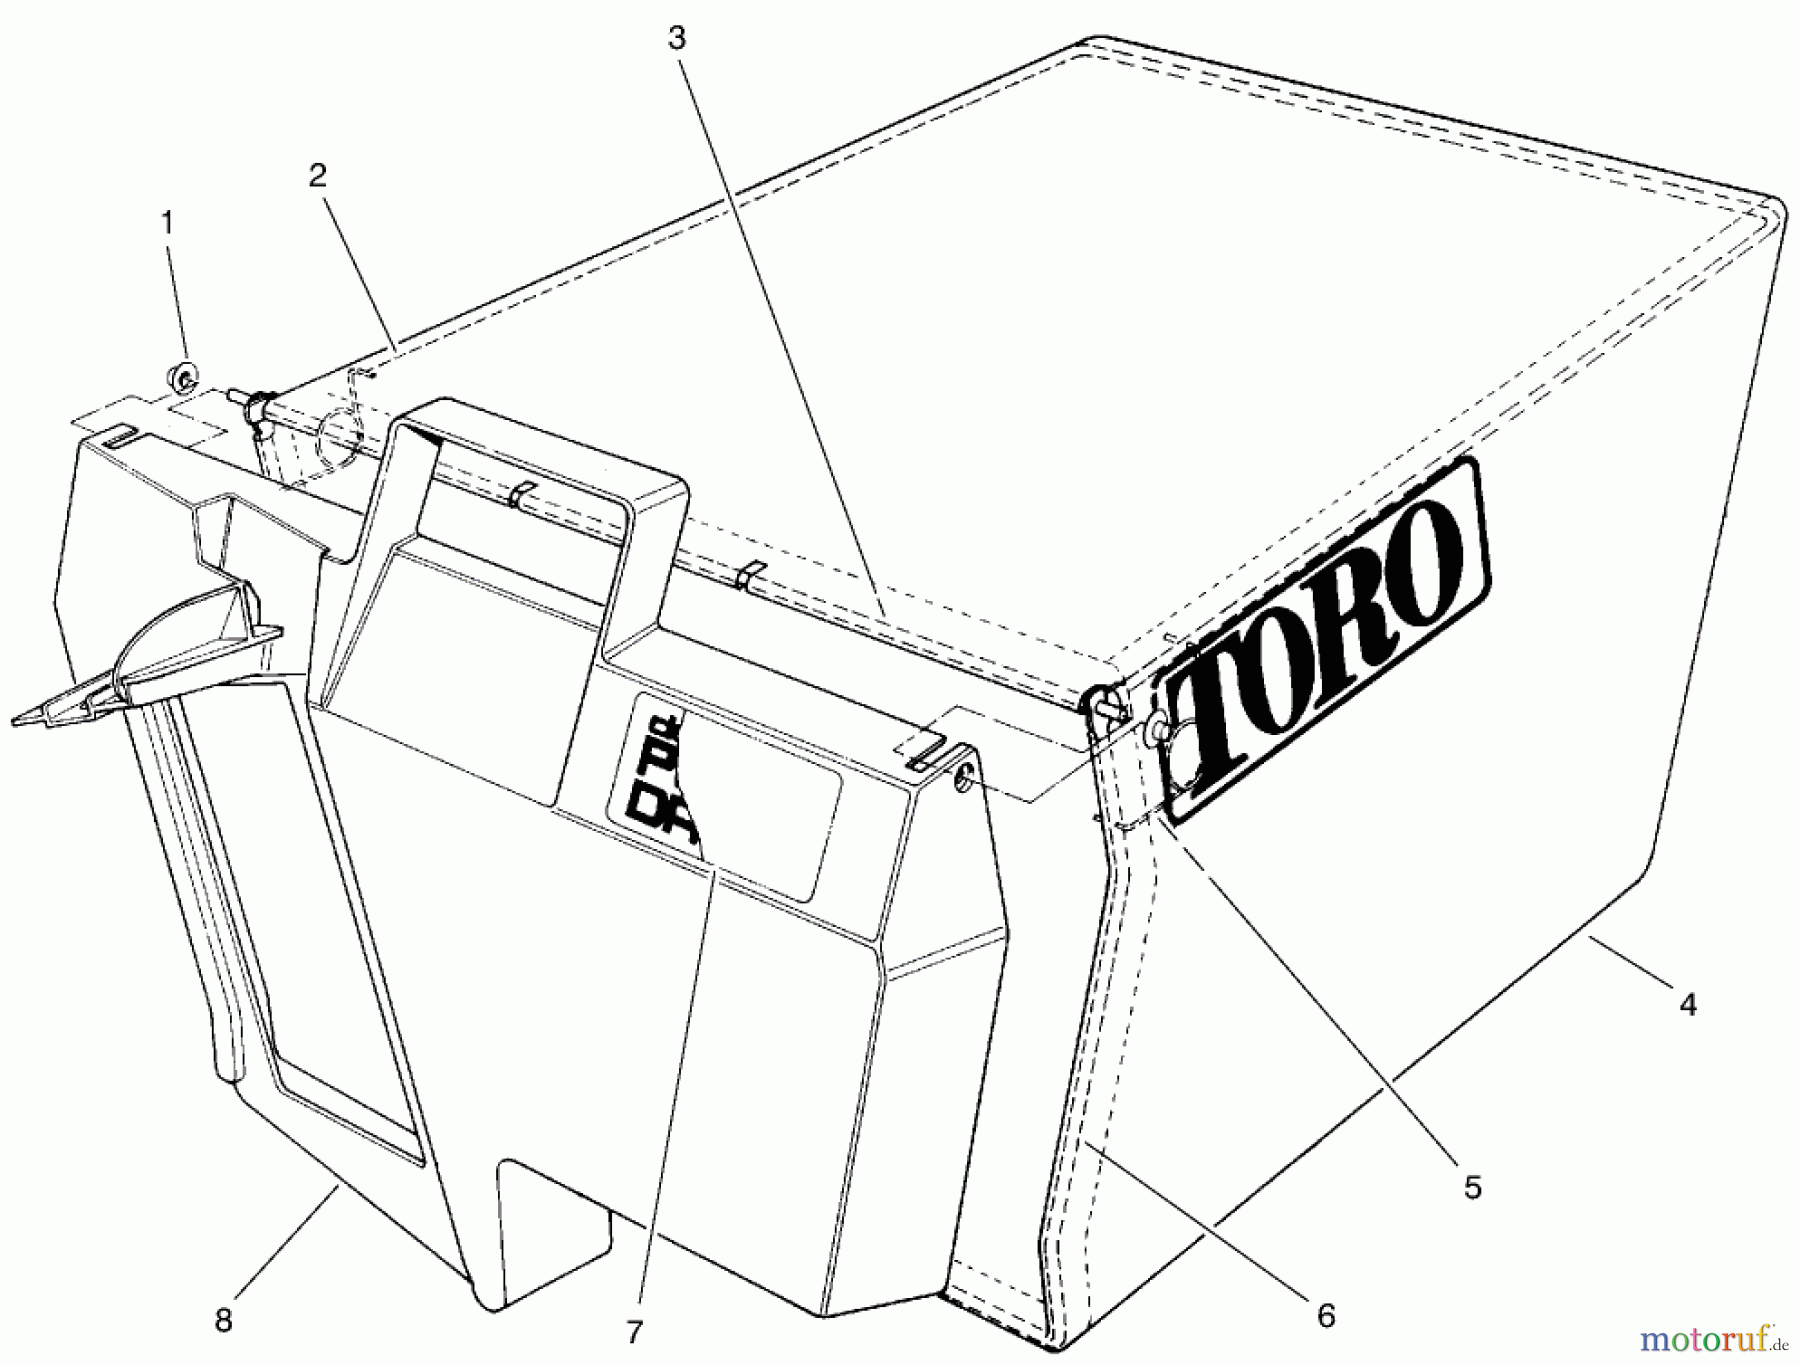  Toro Neu Mowers, Walk-Behind Seite 1 20476 - Toro Lawnmower, 1996 (6900001-6999999) BAG ASSEMBLY PART NO. 11-0189